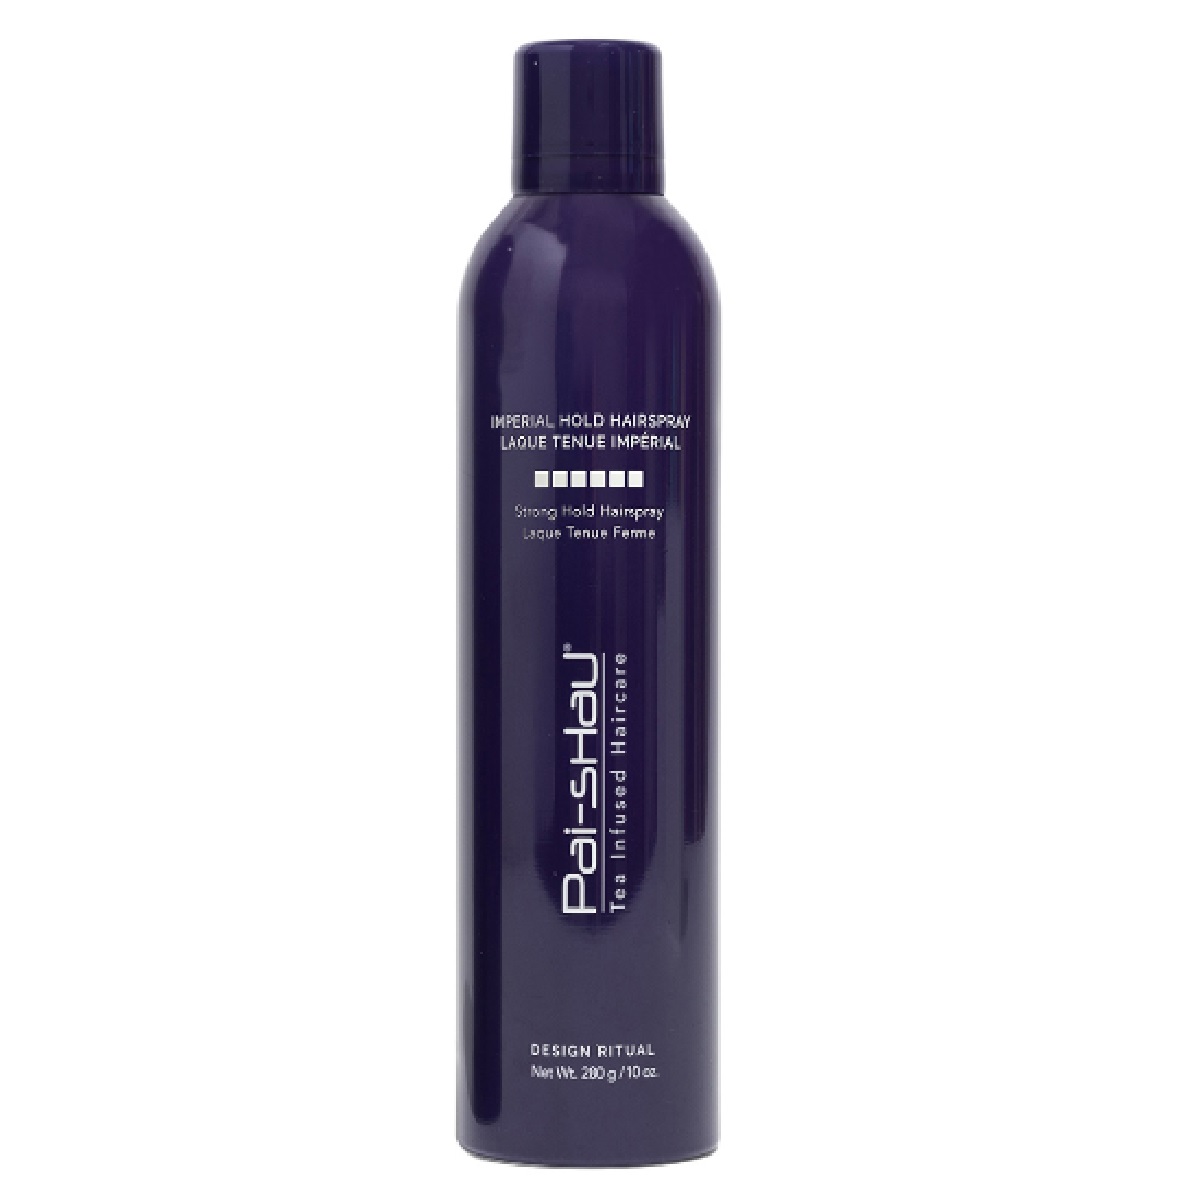 imperial hold hairspray (spray para cabello)